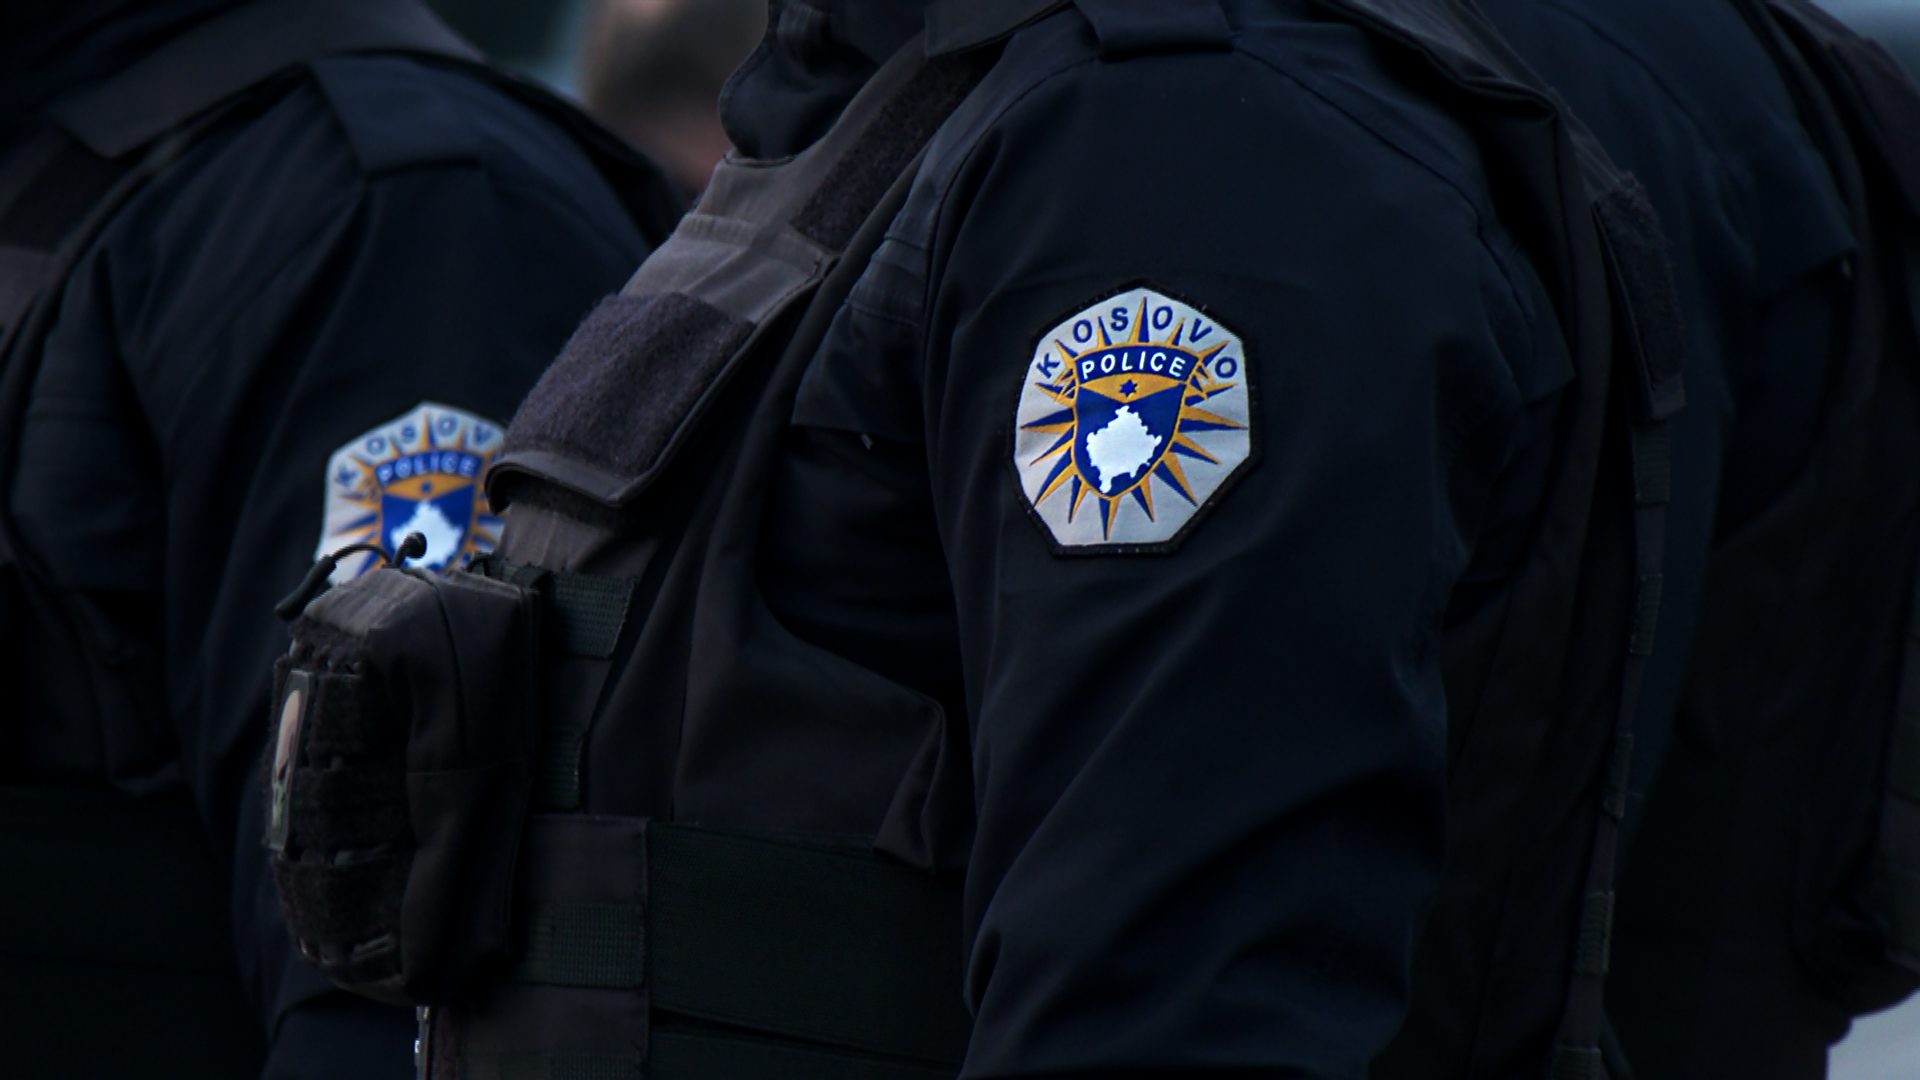 Sulm fizik ndaj një personi në Prishtinë, arrestohet një i dyshuar